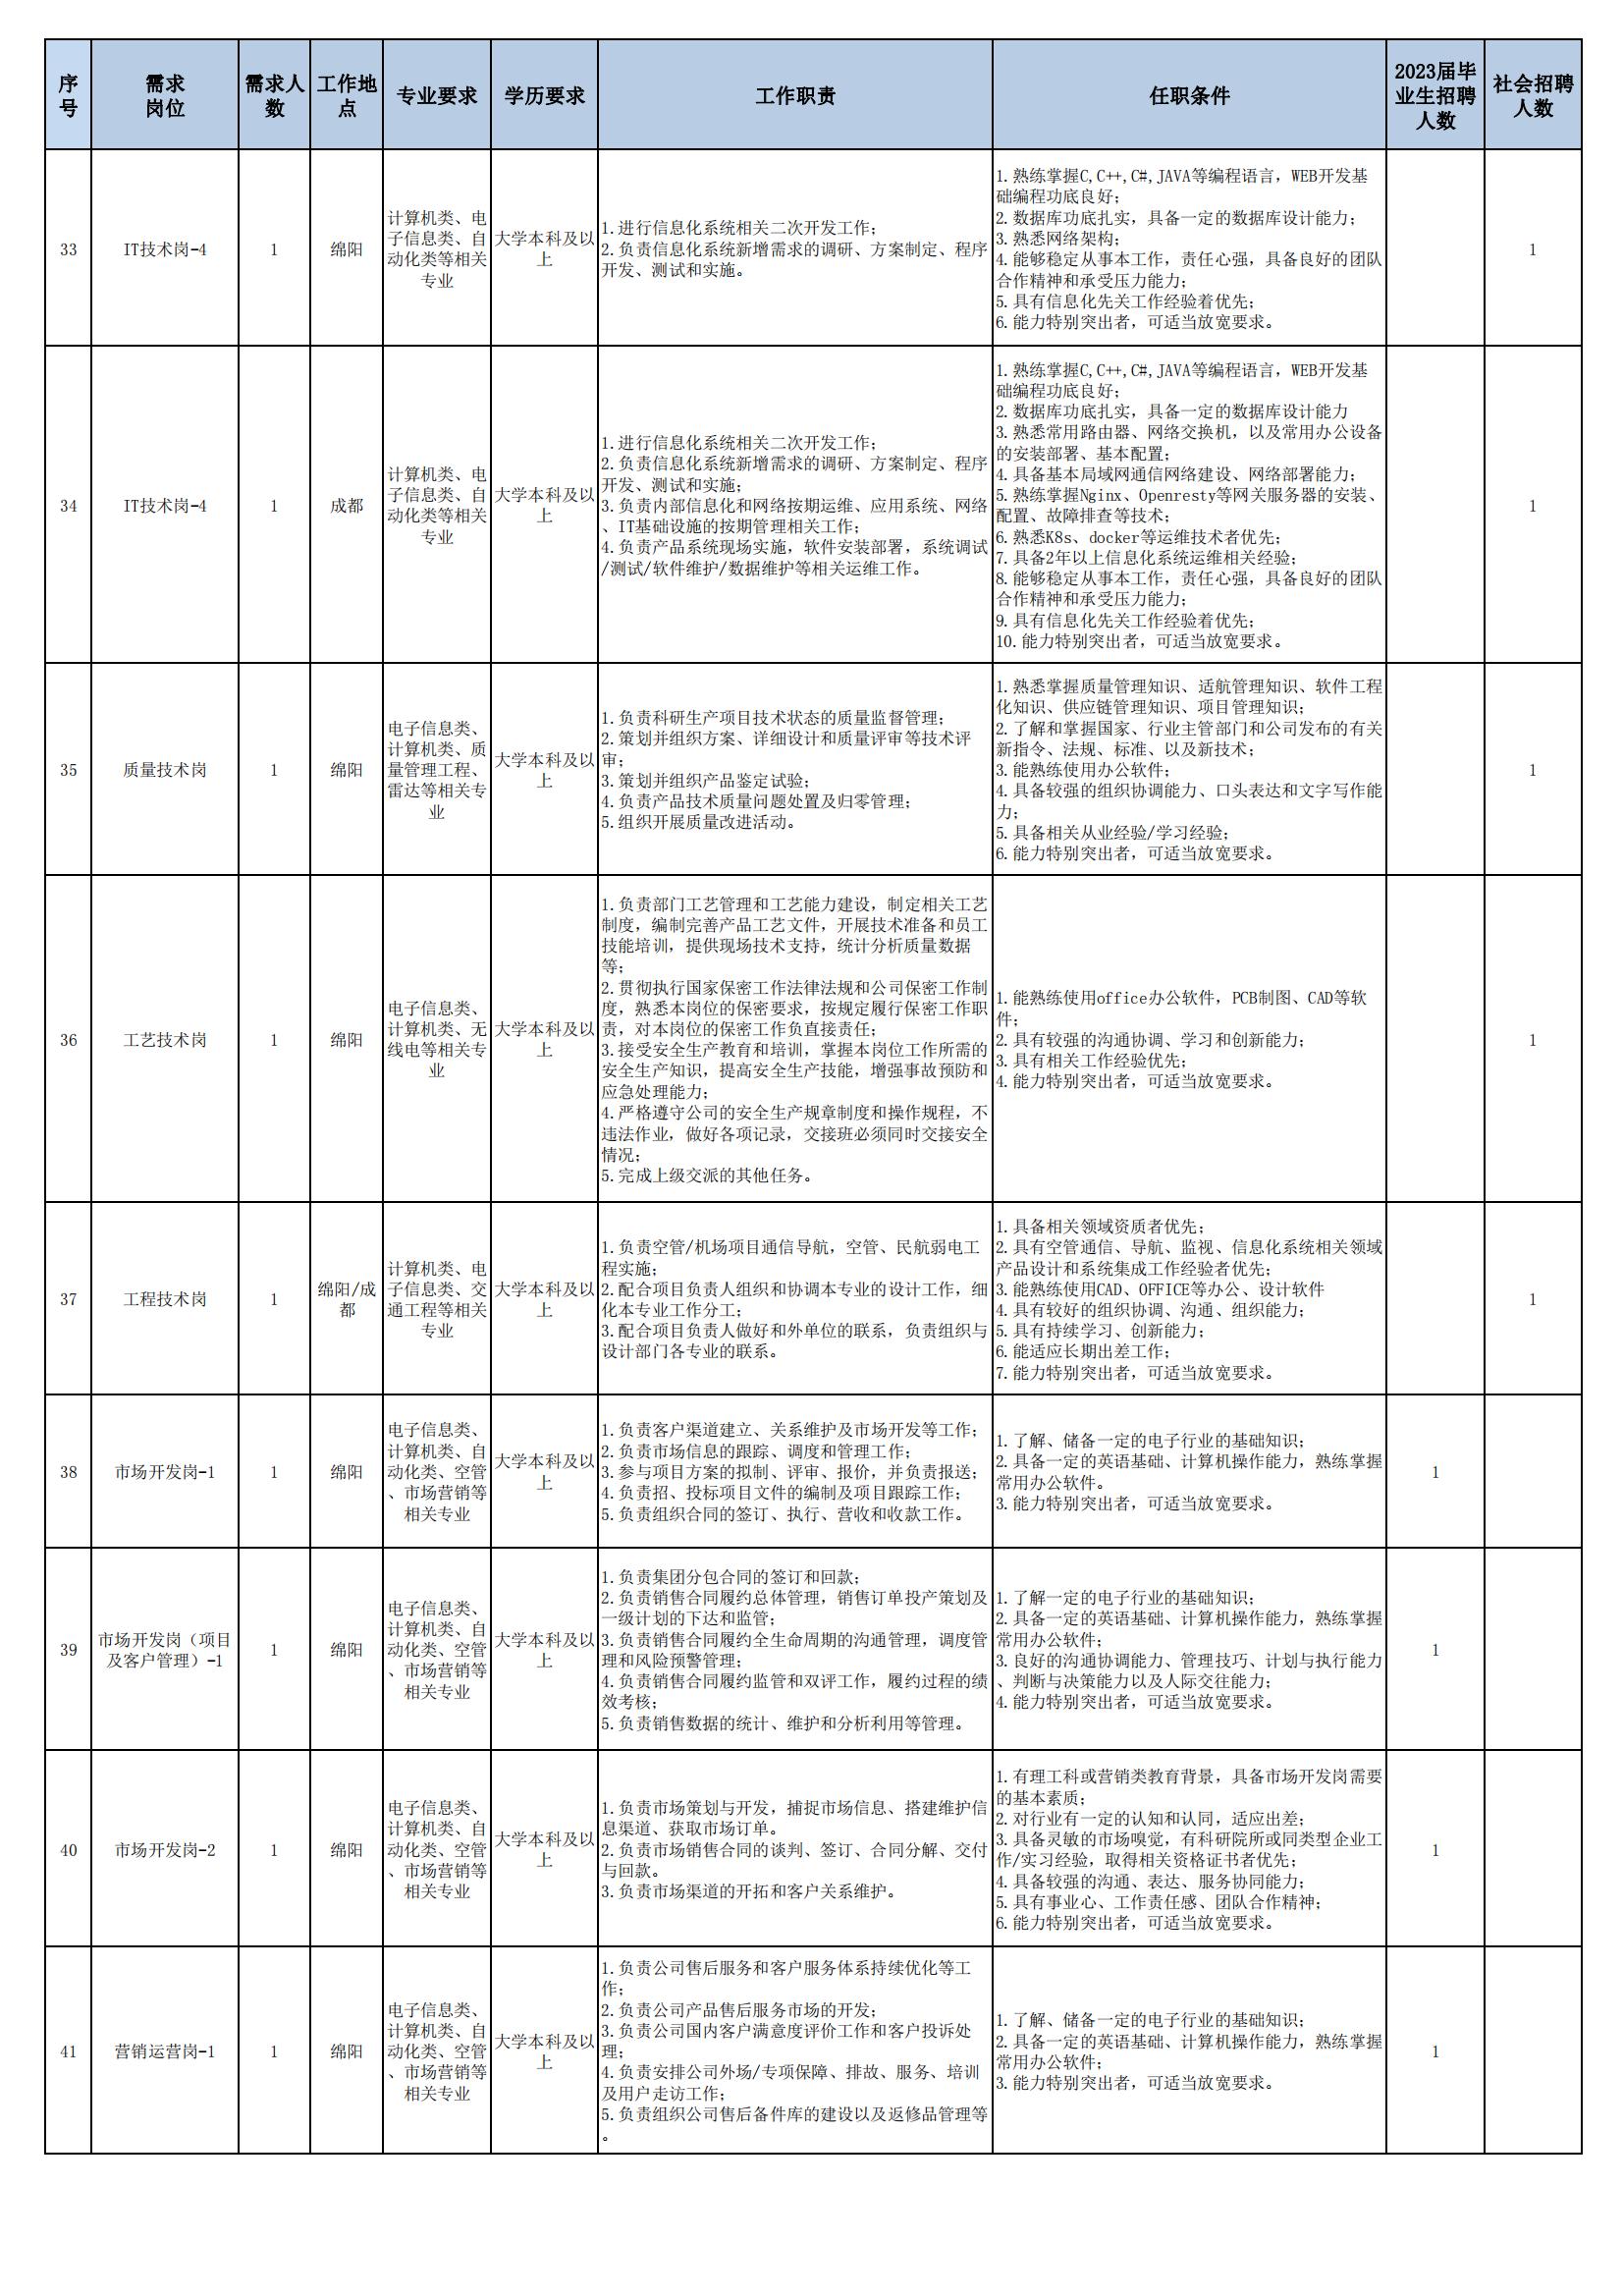 01 四川九洲空管科技有限责任公司招聘岗位列表 - 招聘公告（07月更新）_04.jpg